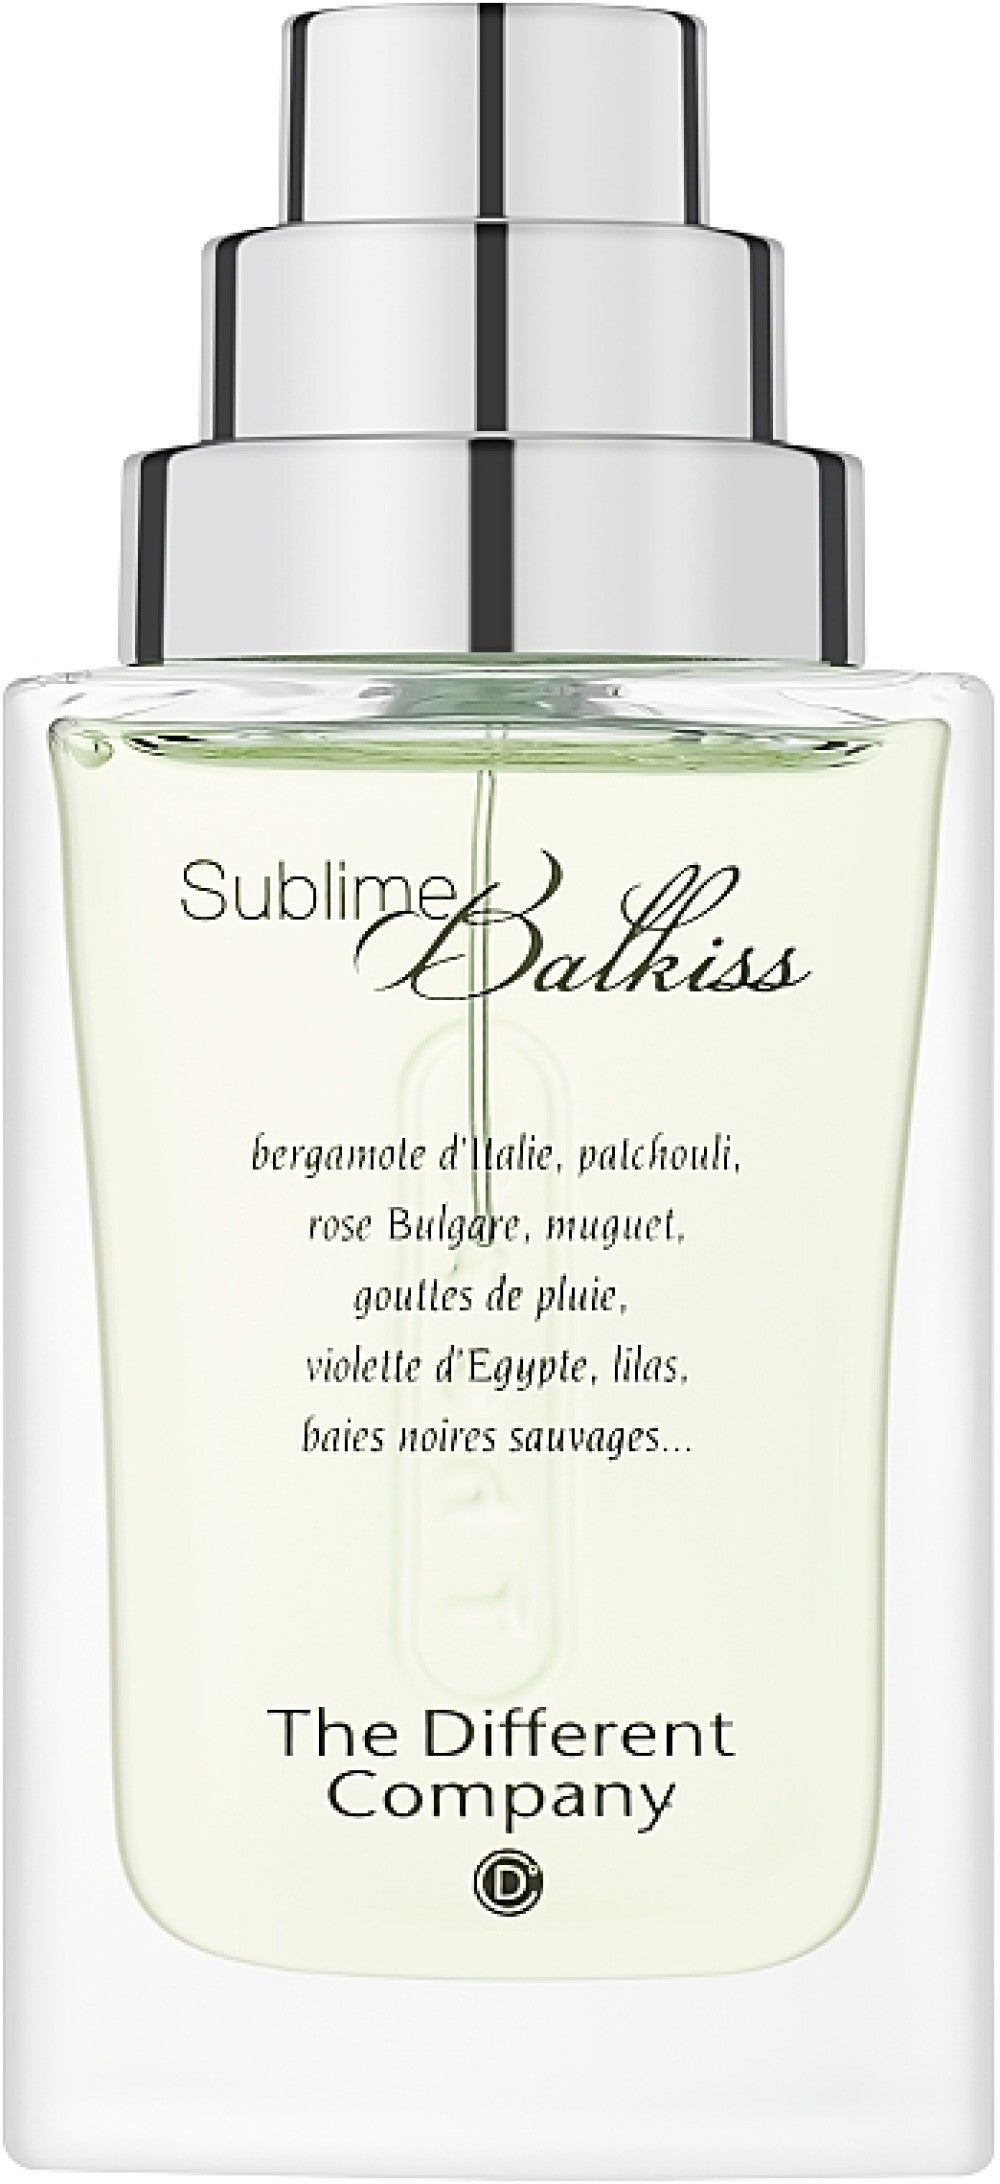 The Different Company, Sublime Balkiss, Eau De Parfum, Pour Femme, 100 ml